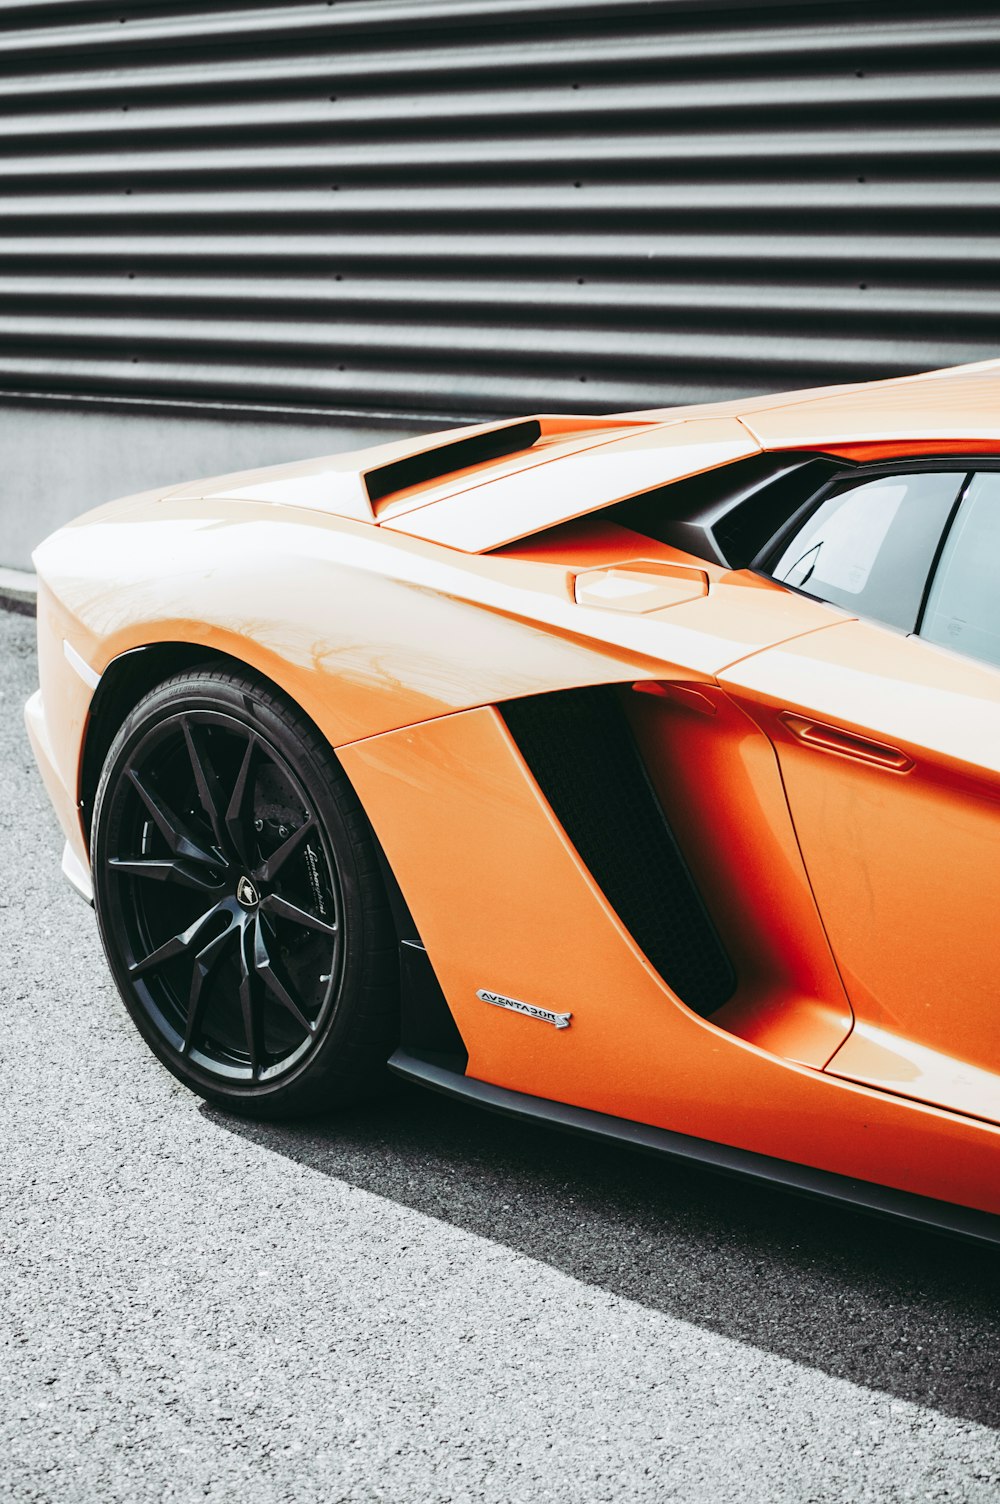 Fotografía de enfoque de coche deportivo naranja aparcado